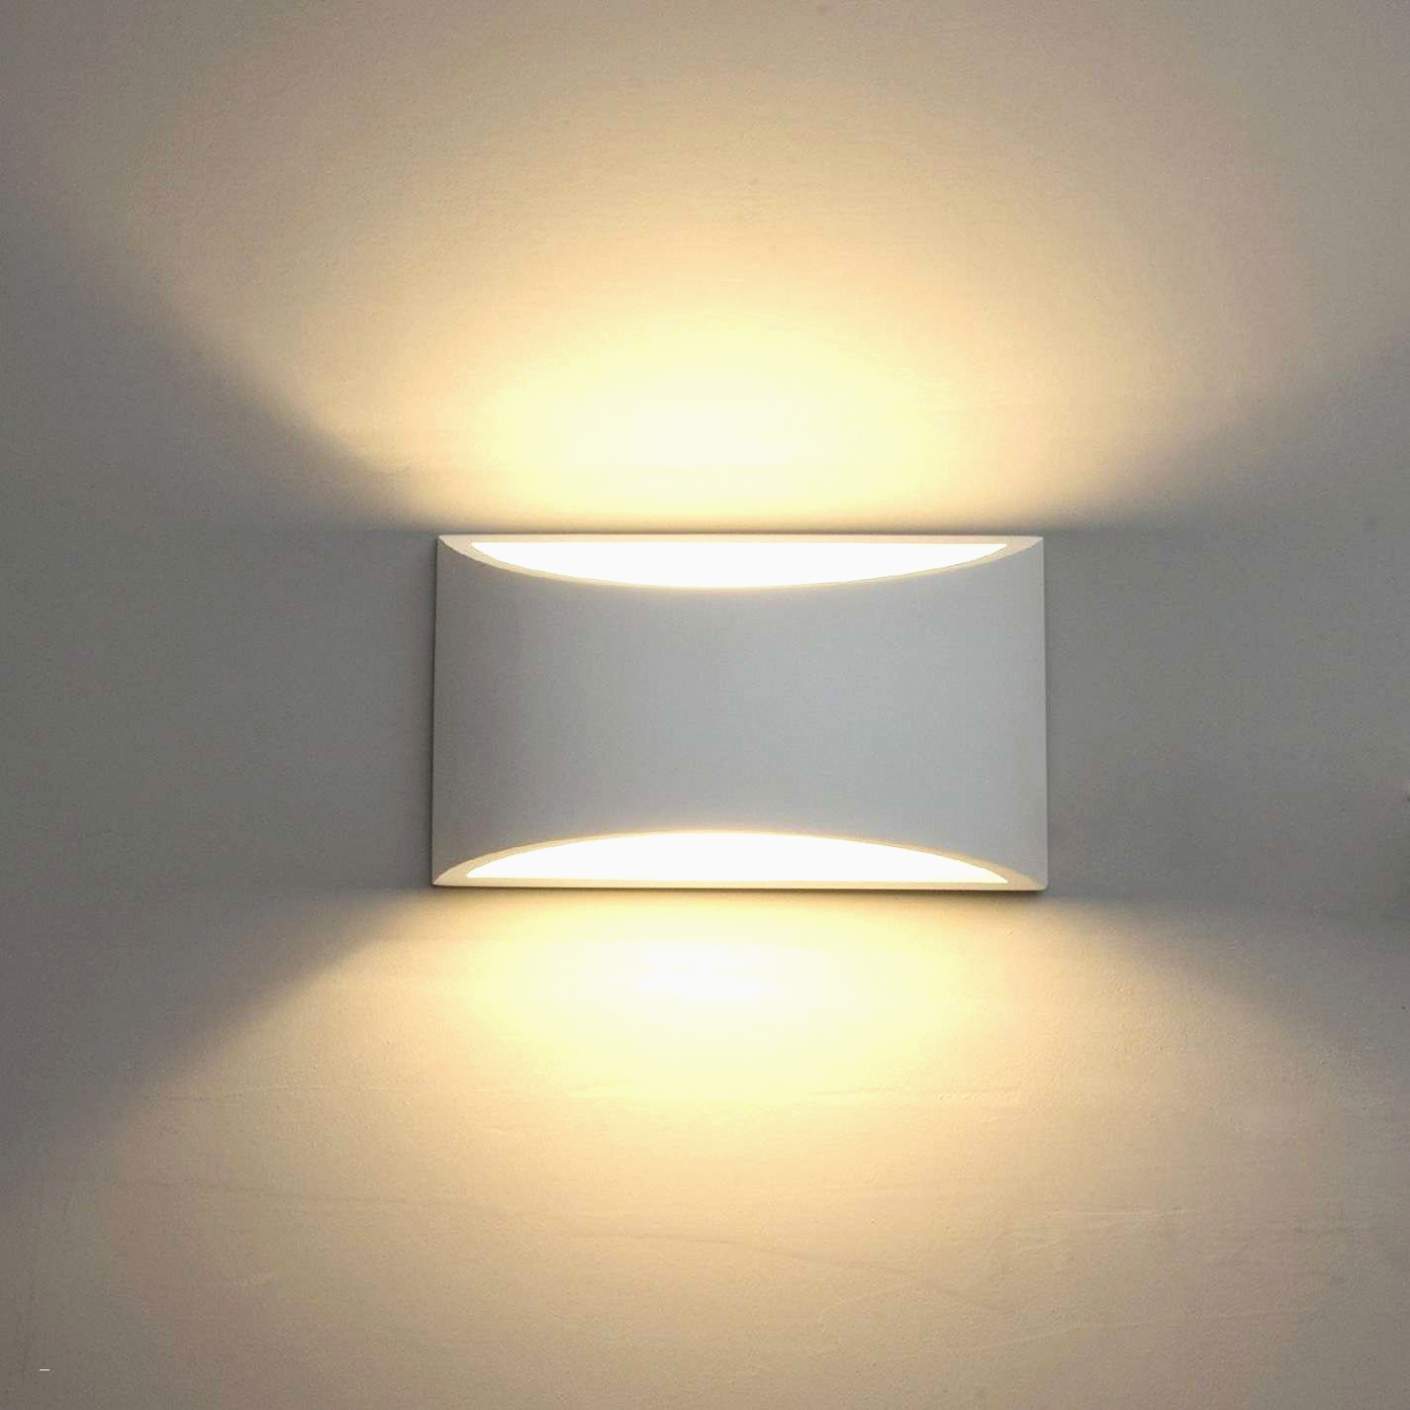 wohnzimmer leuchte schon wohnzimmer lampe konzept tipps von experten of wohnzimmer leuchte